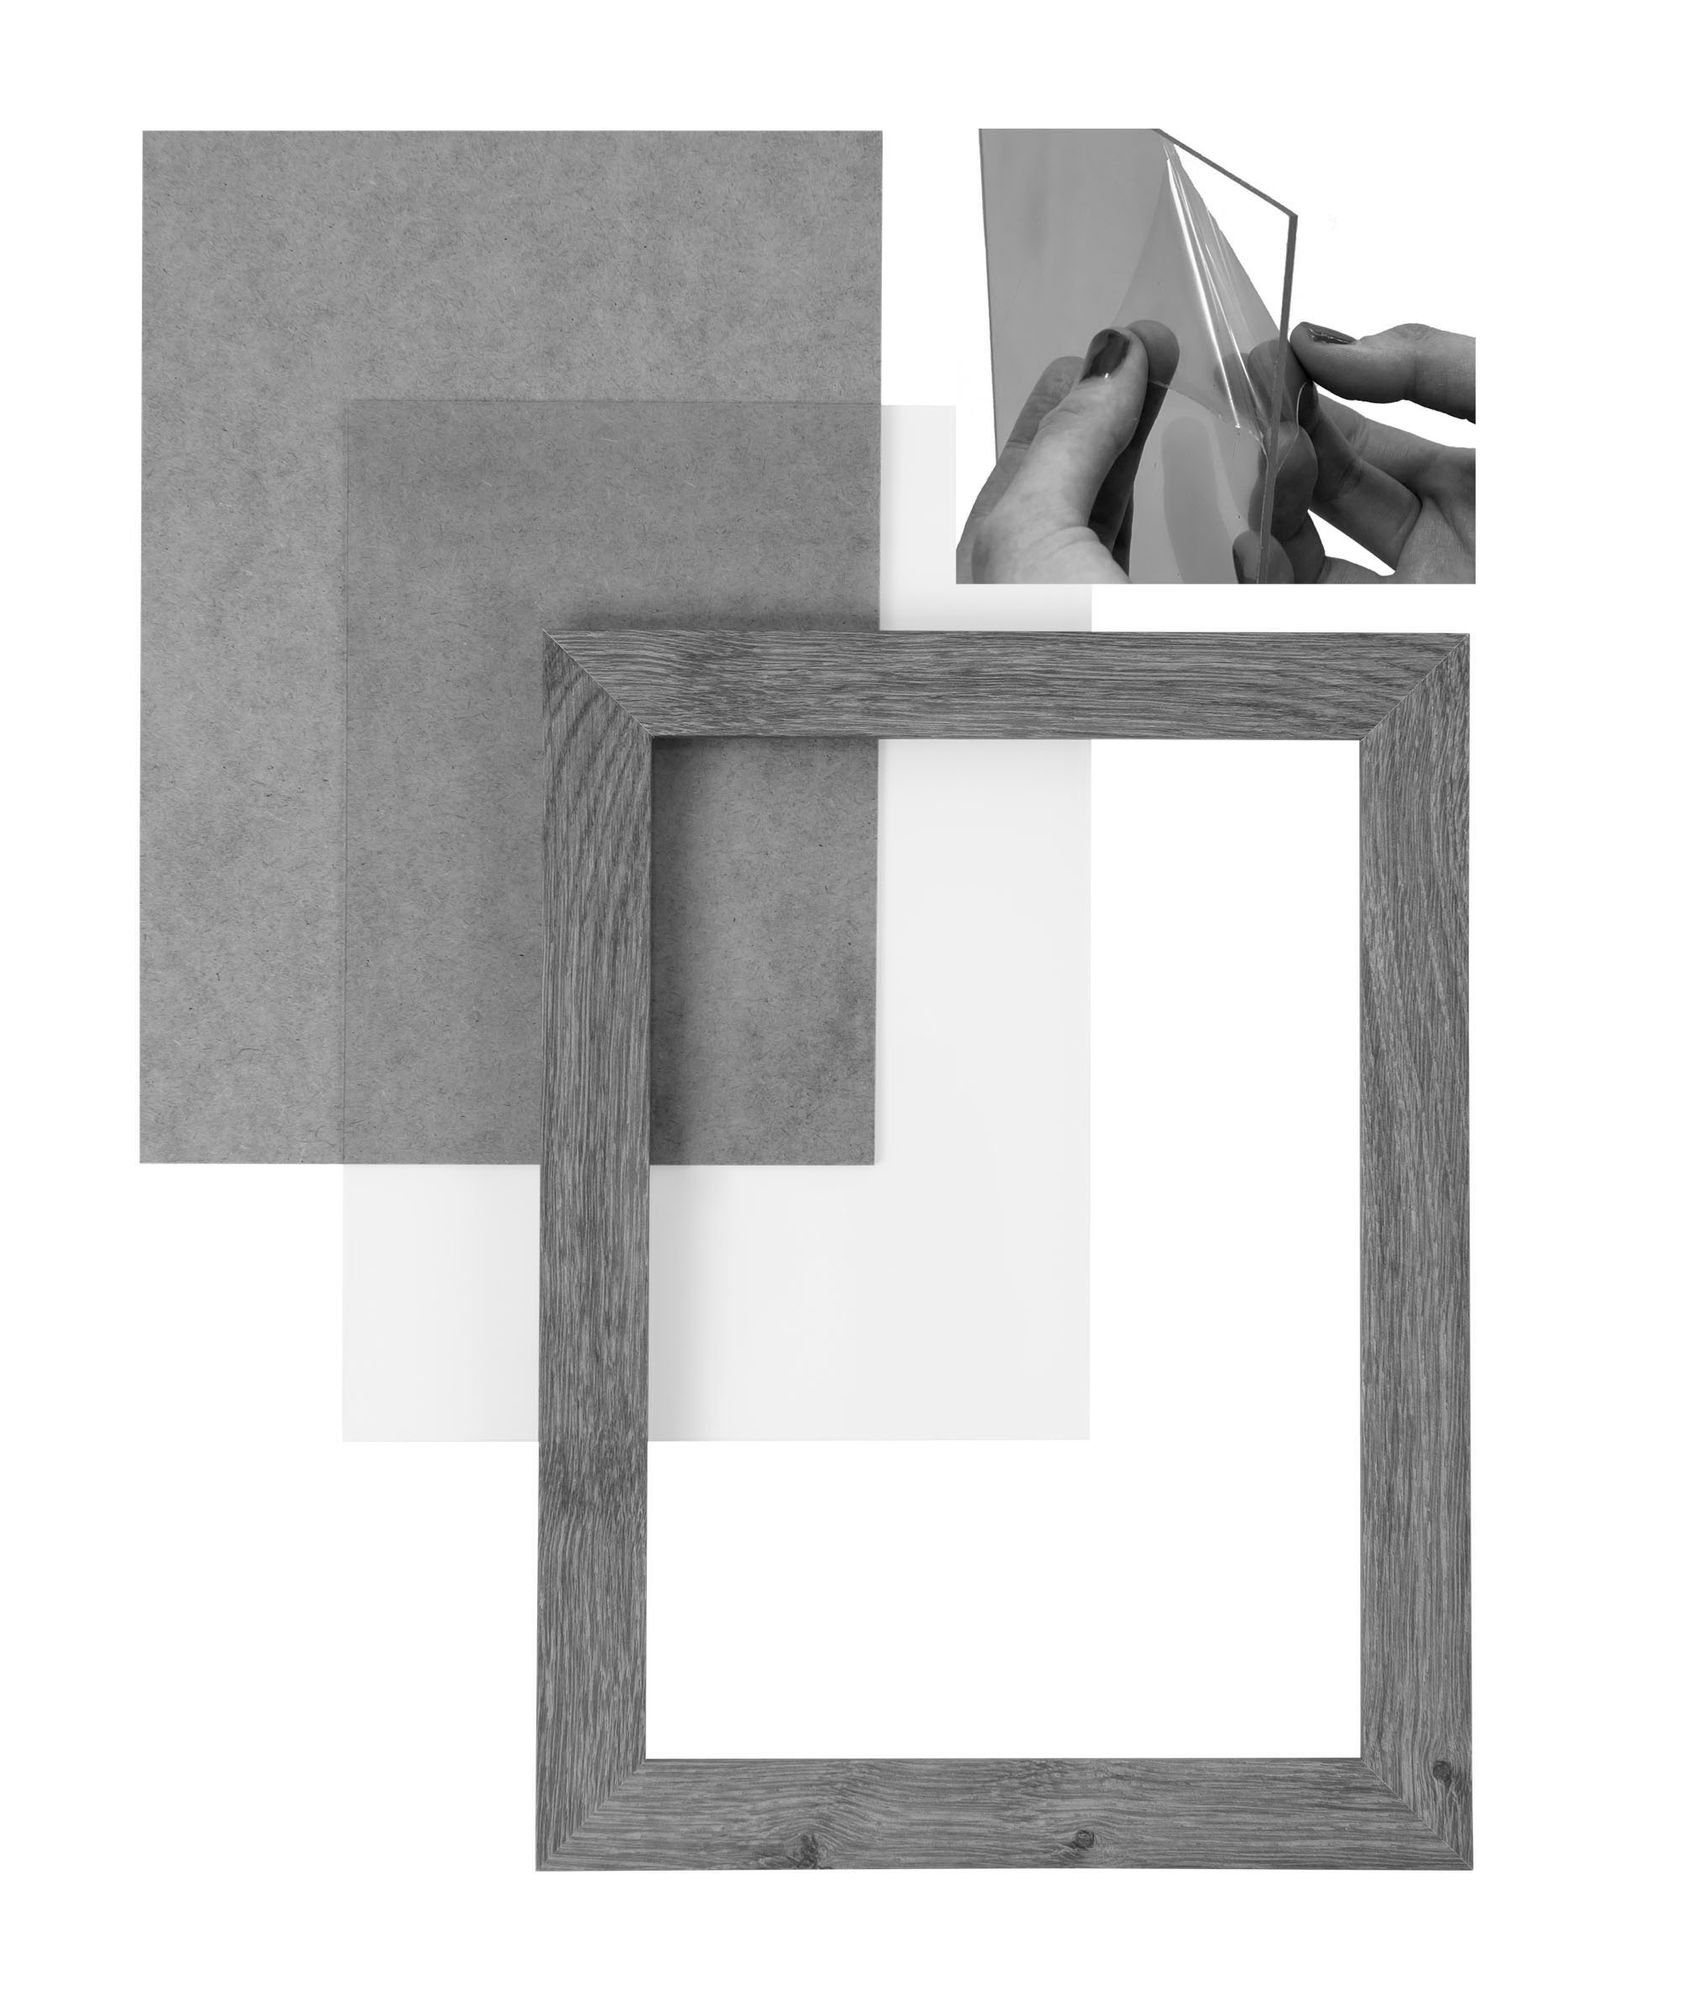 Maß Bilderrahmen Moderner FSC® und Holz gebürstet Rückwand CLAMARO 30x44 Clamaro Rahmen nach MDF Acrylglas, silber in handgefertigt Bilderrahmen inkl. eckiger 'Collage' Aufhänger